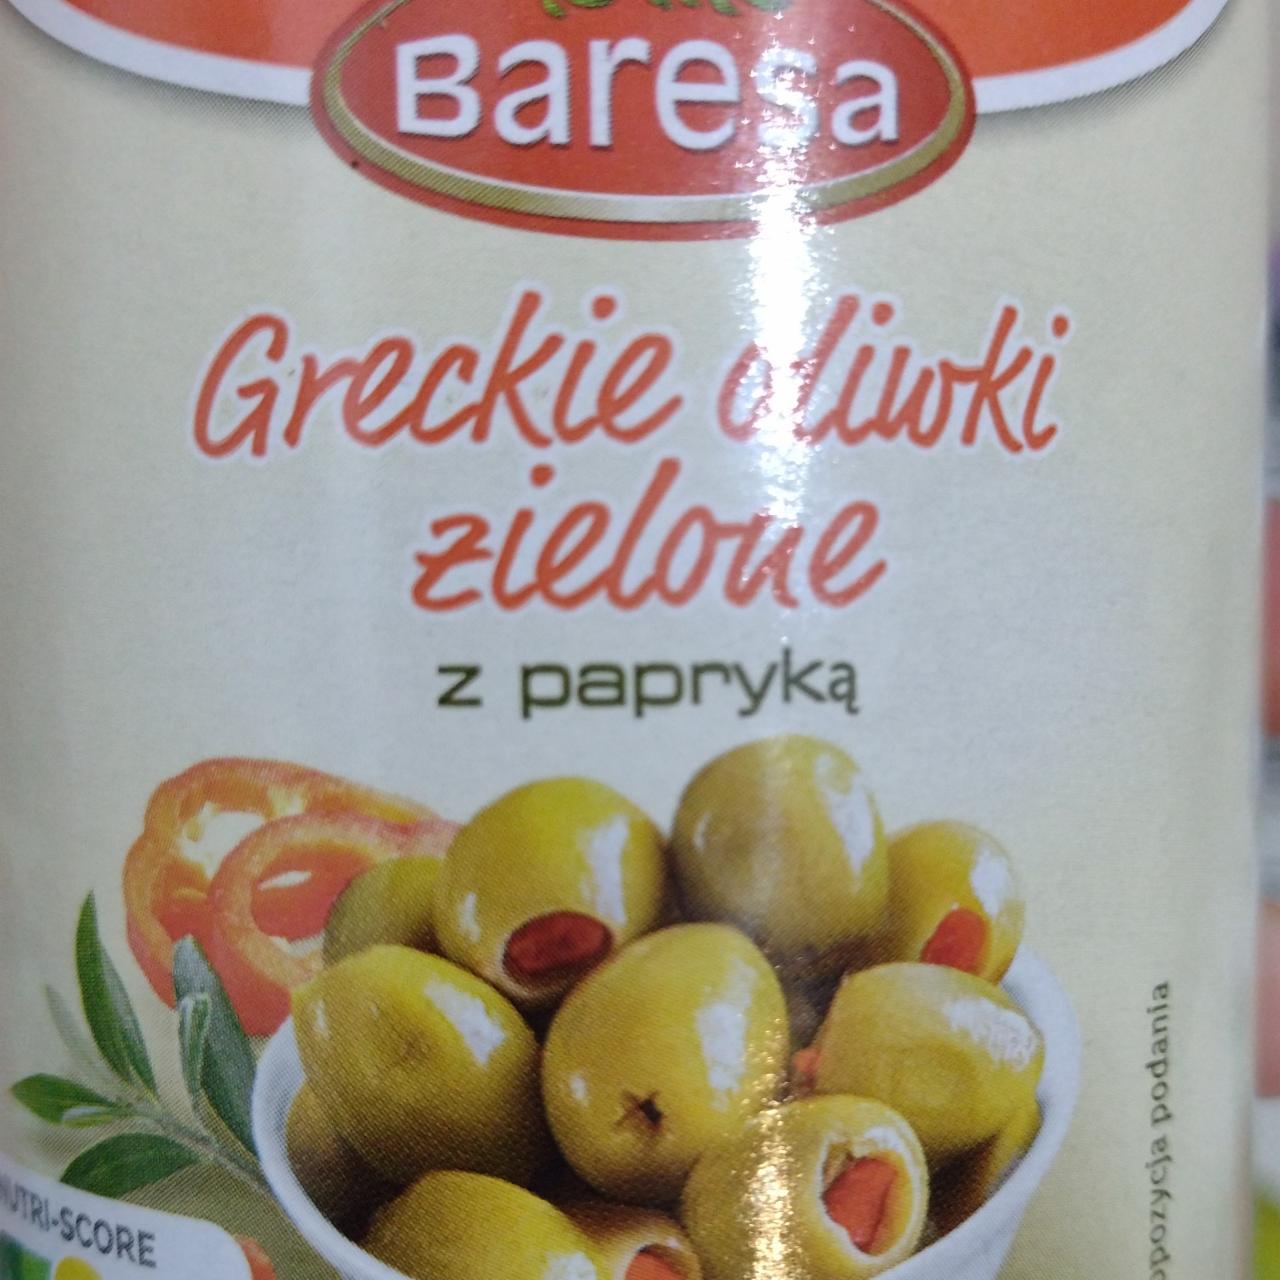 Zdjęcia - Greckie oliwki zielone z papryką Baresa